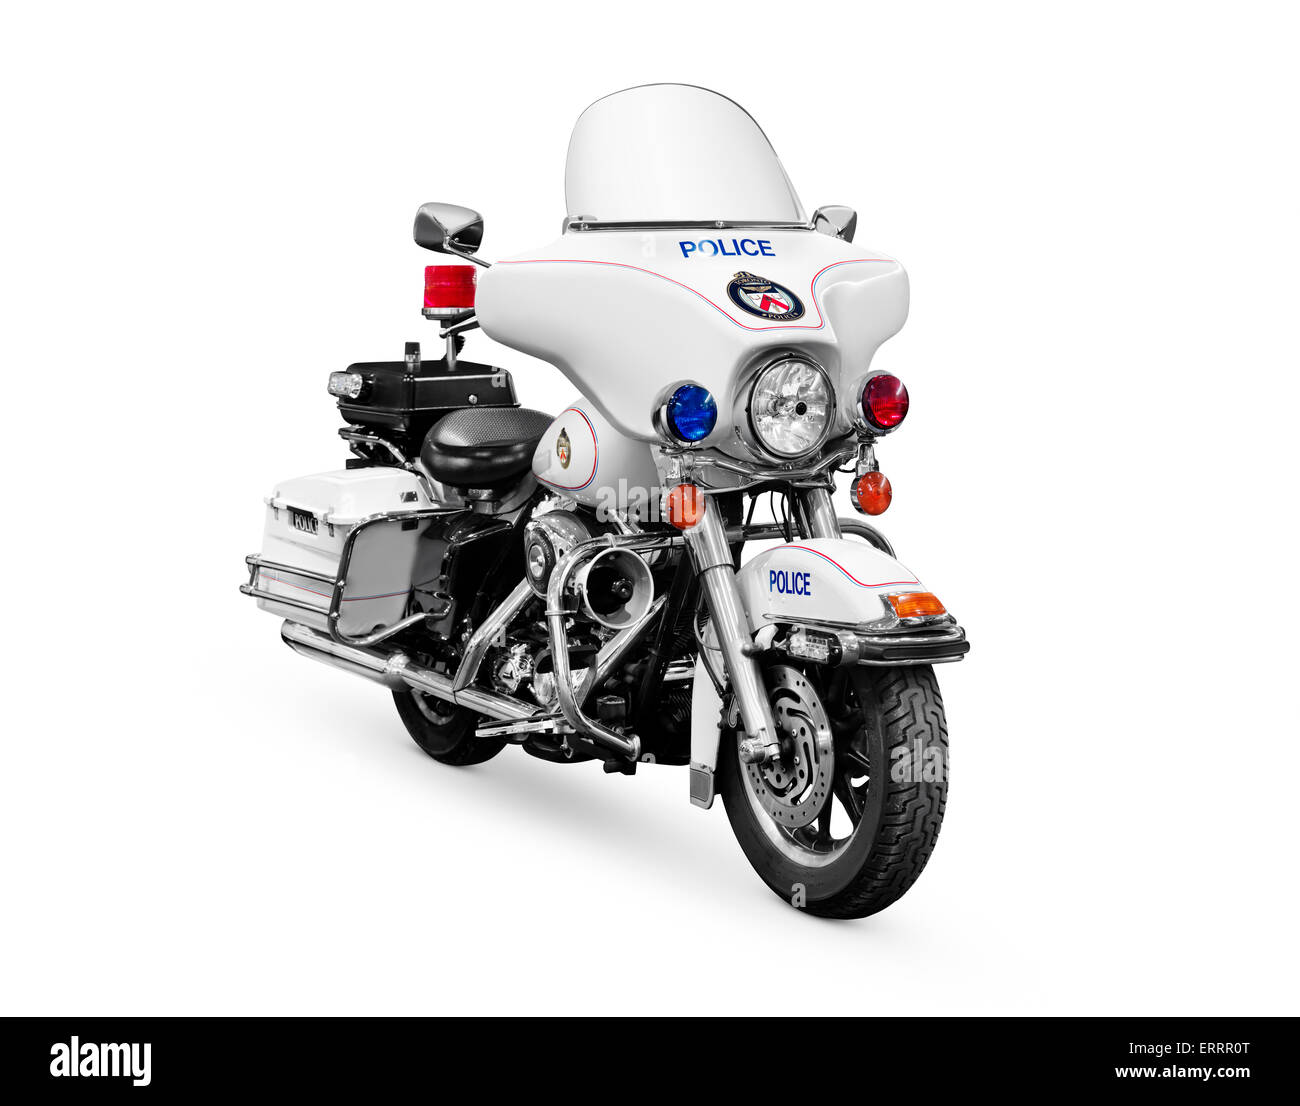 Führerschein erhältlich unter MaximImages.com - Police Motorcycle Harley Davidson FLHTP isoliert auf weißem Hintergrund mit Clipping Path Stockfoto